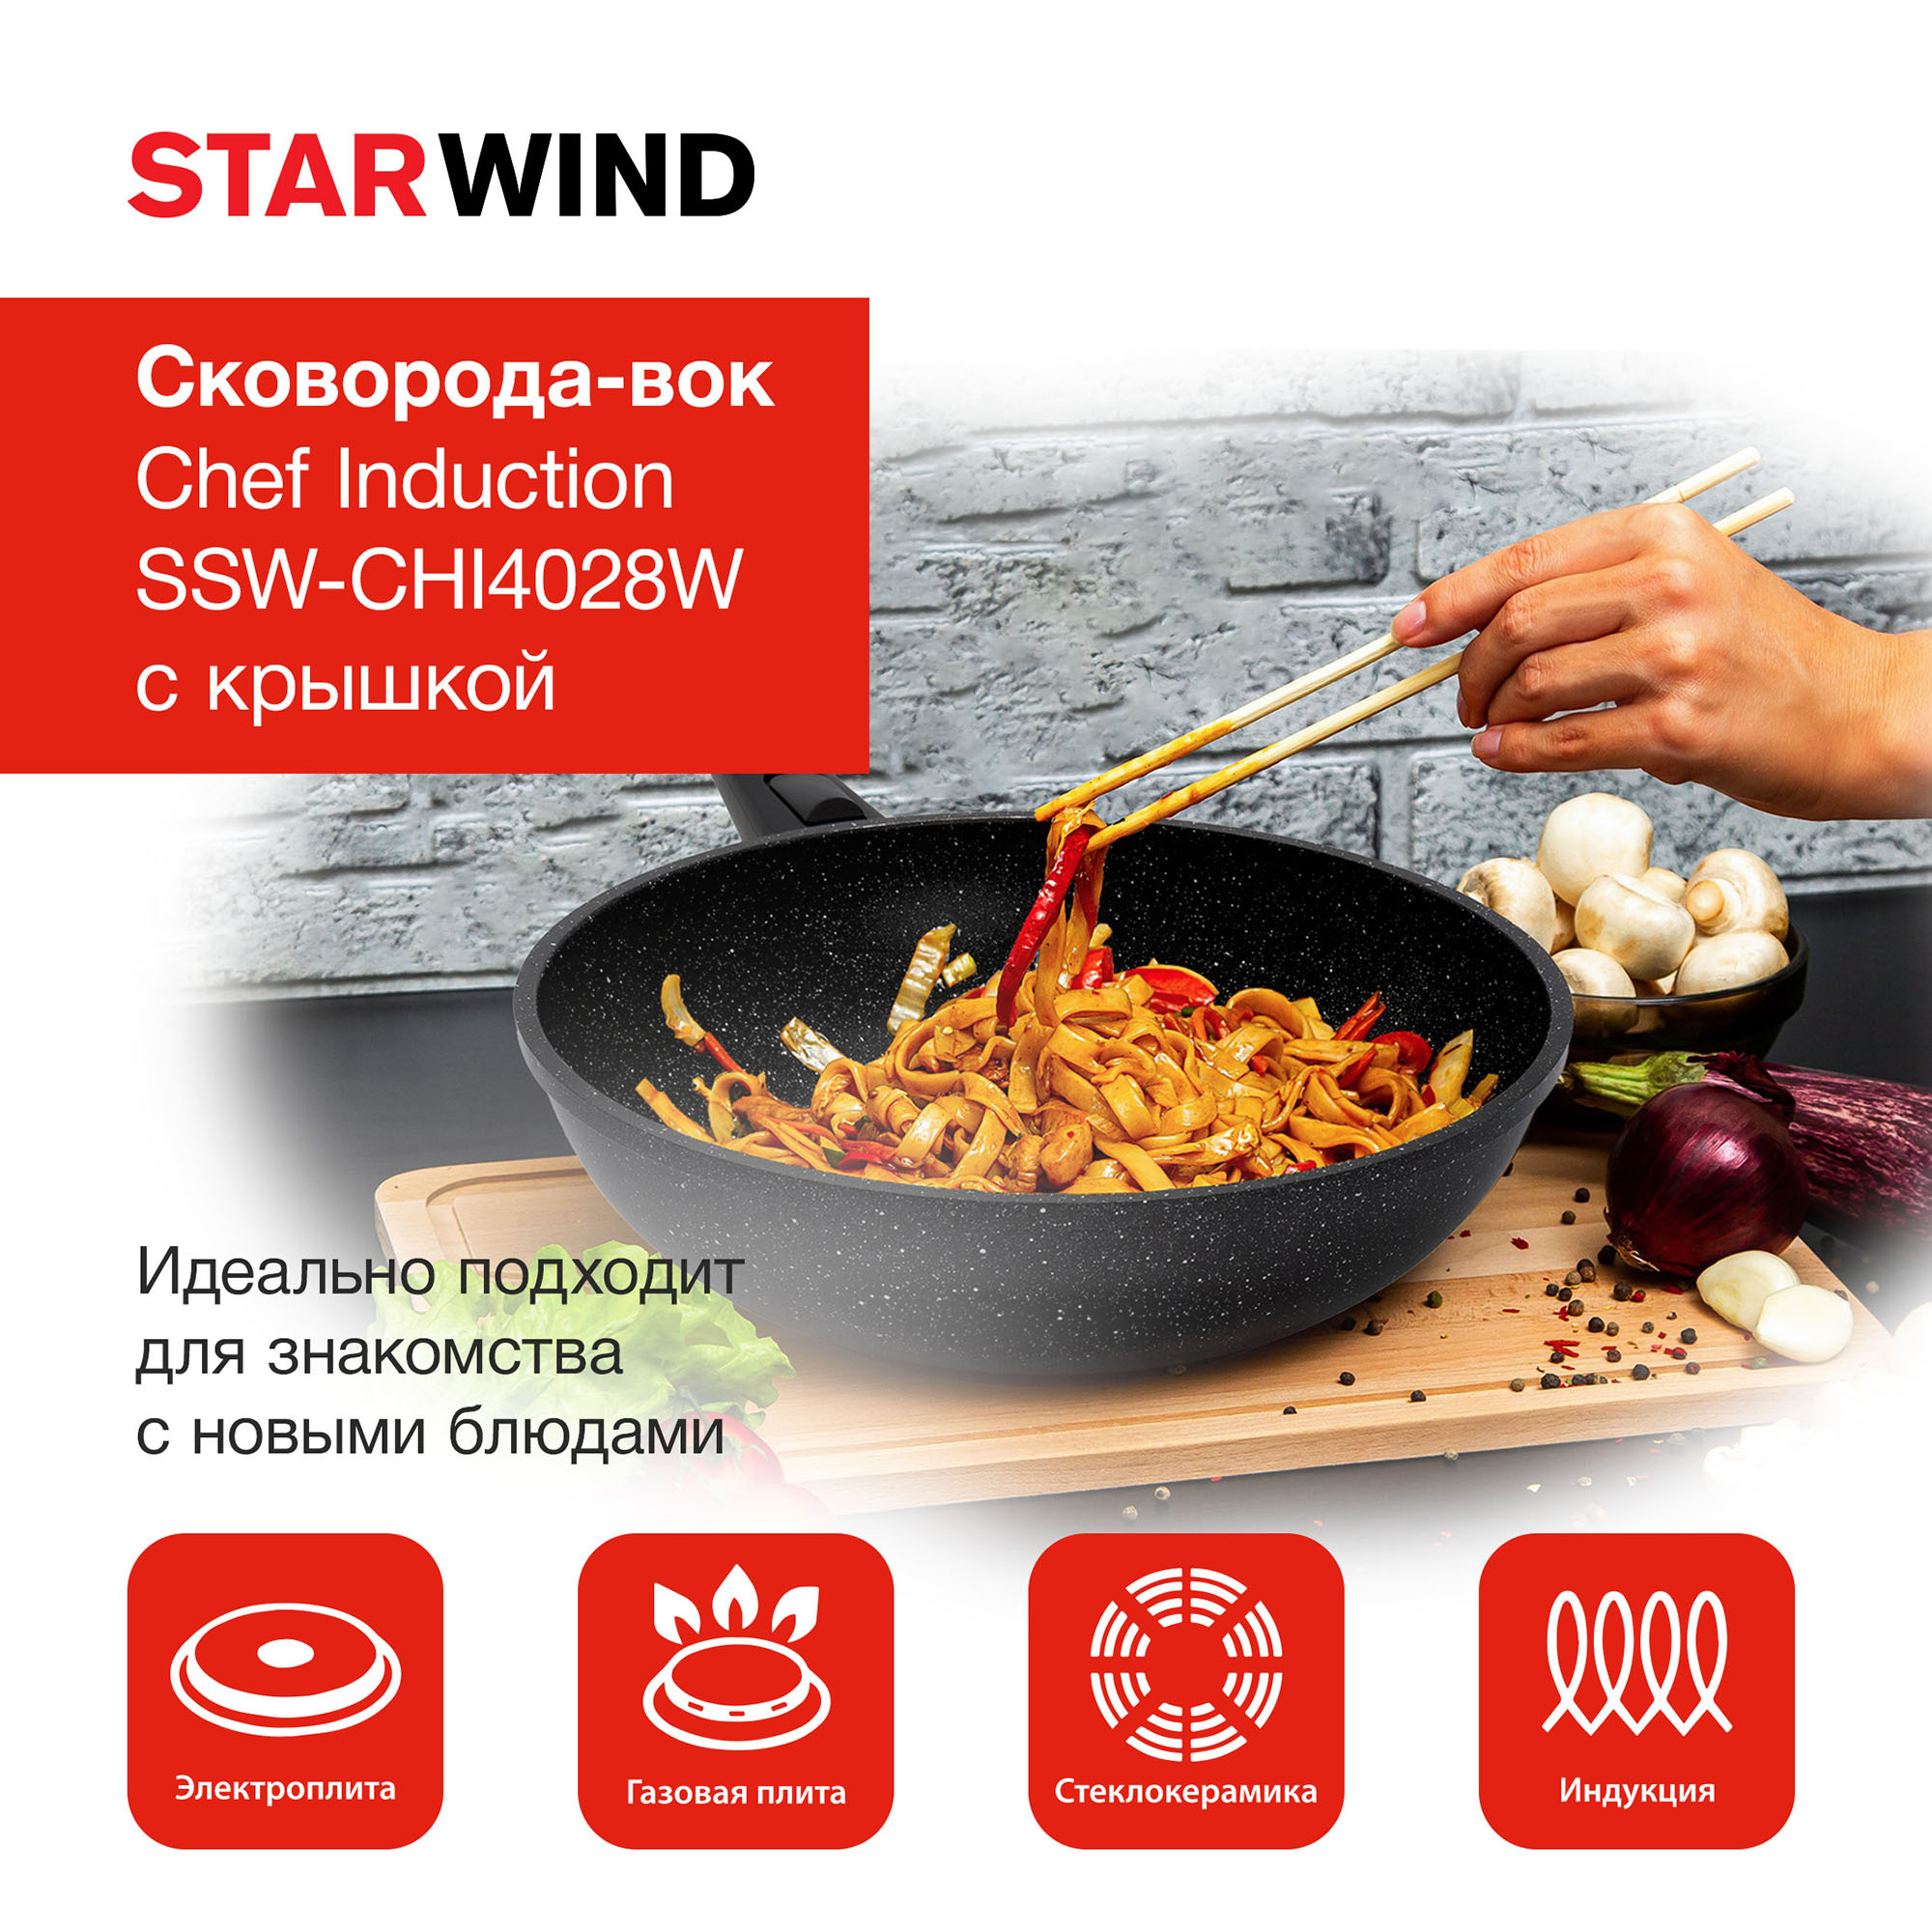 Сковорода ВОК (WOK) Starwind Chef Induction SW-CHI4028W круглая 28см покрытие: Pfluon ручка съемная (с крышкой) черный (SW-CHI4028W/КОР)